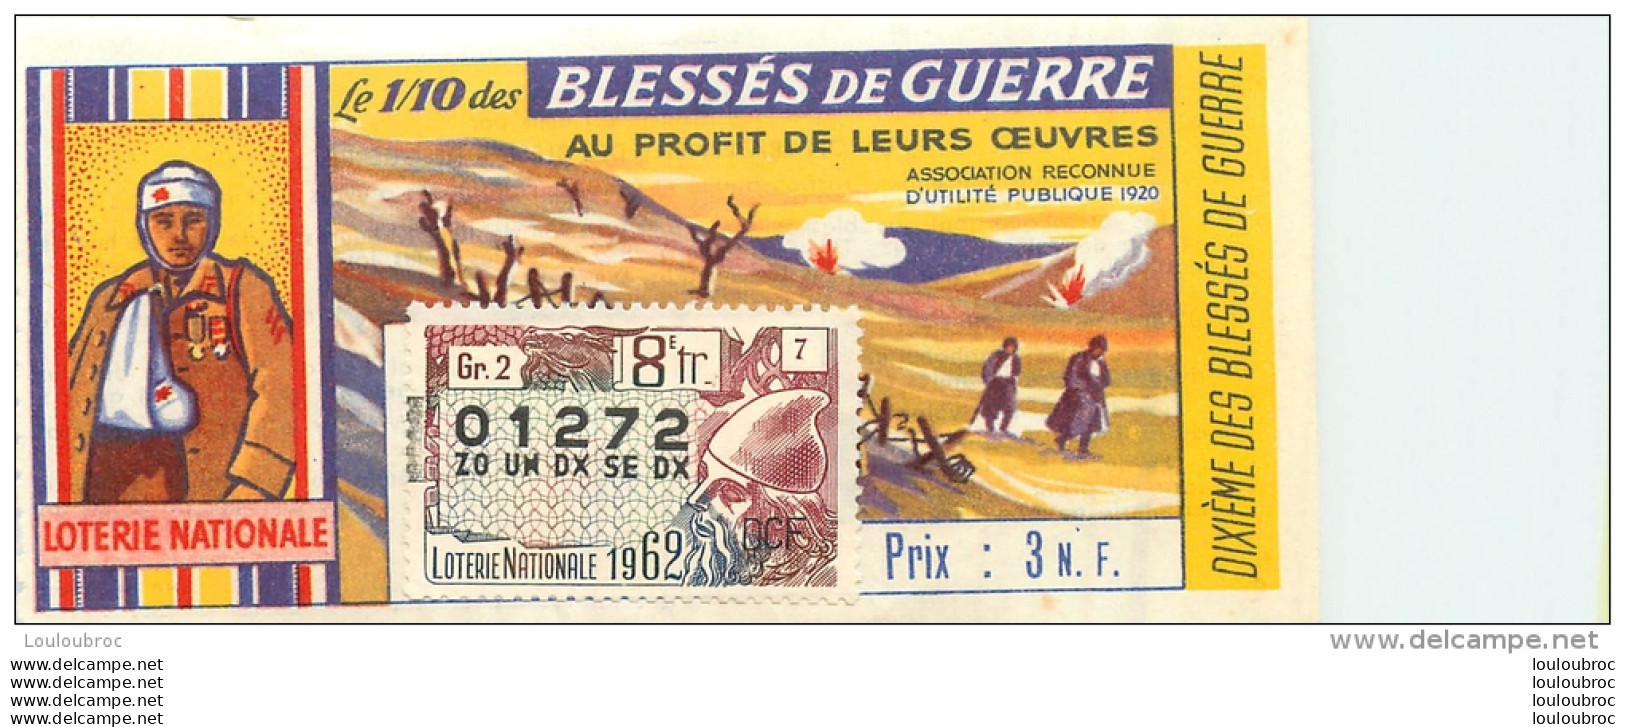 BILLET DE LOTERIE NATIONALE 1962 LES BLESSES DE GUERRE - Billets De Loterie